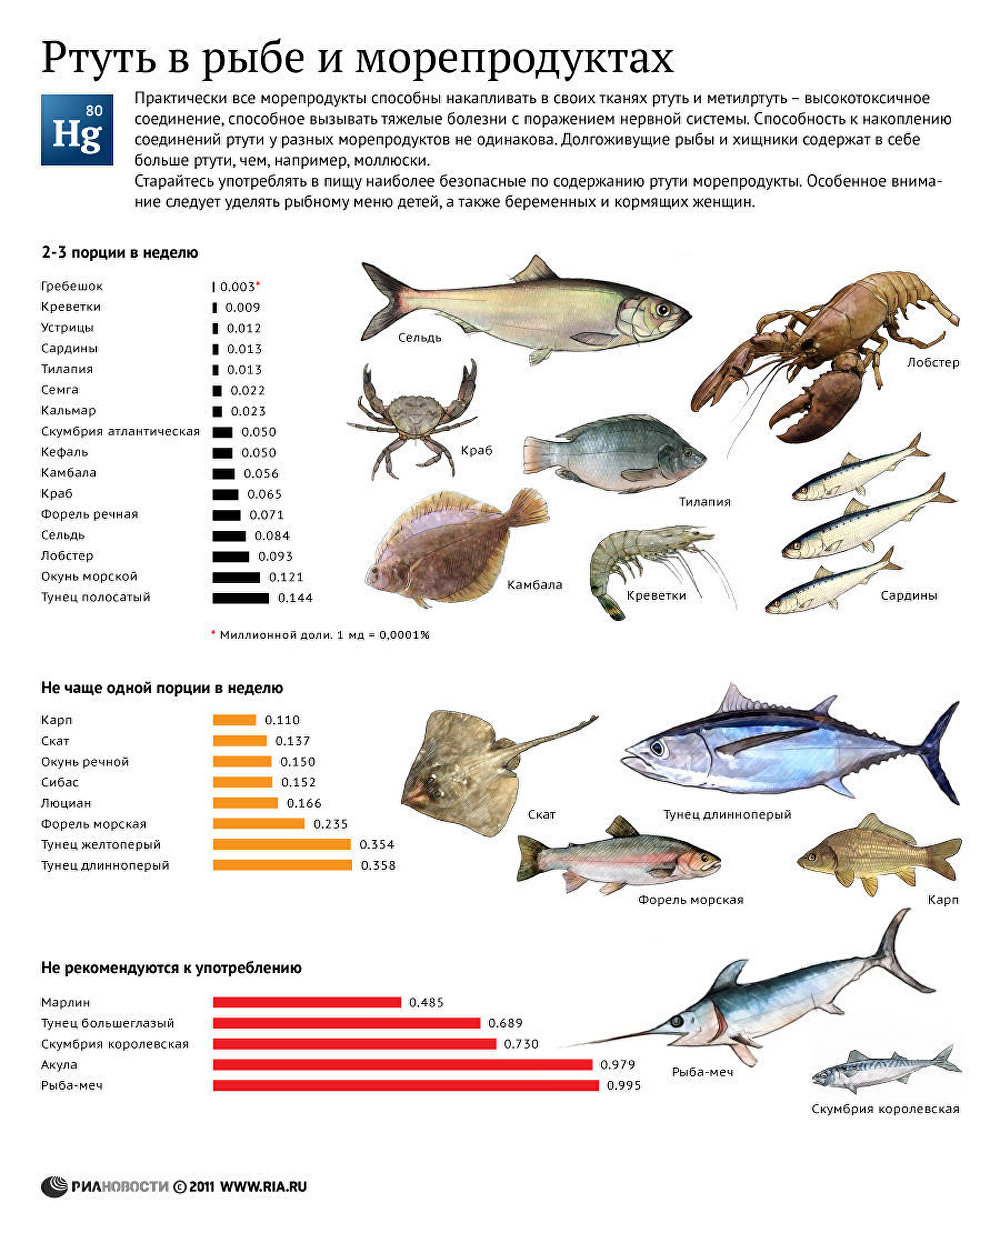 Содержание ртути в рыбе и моллюсках